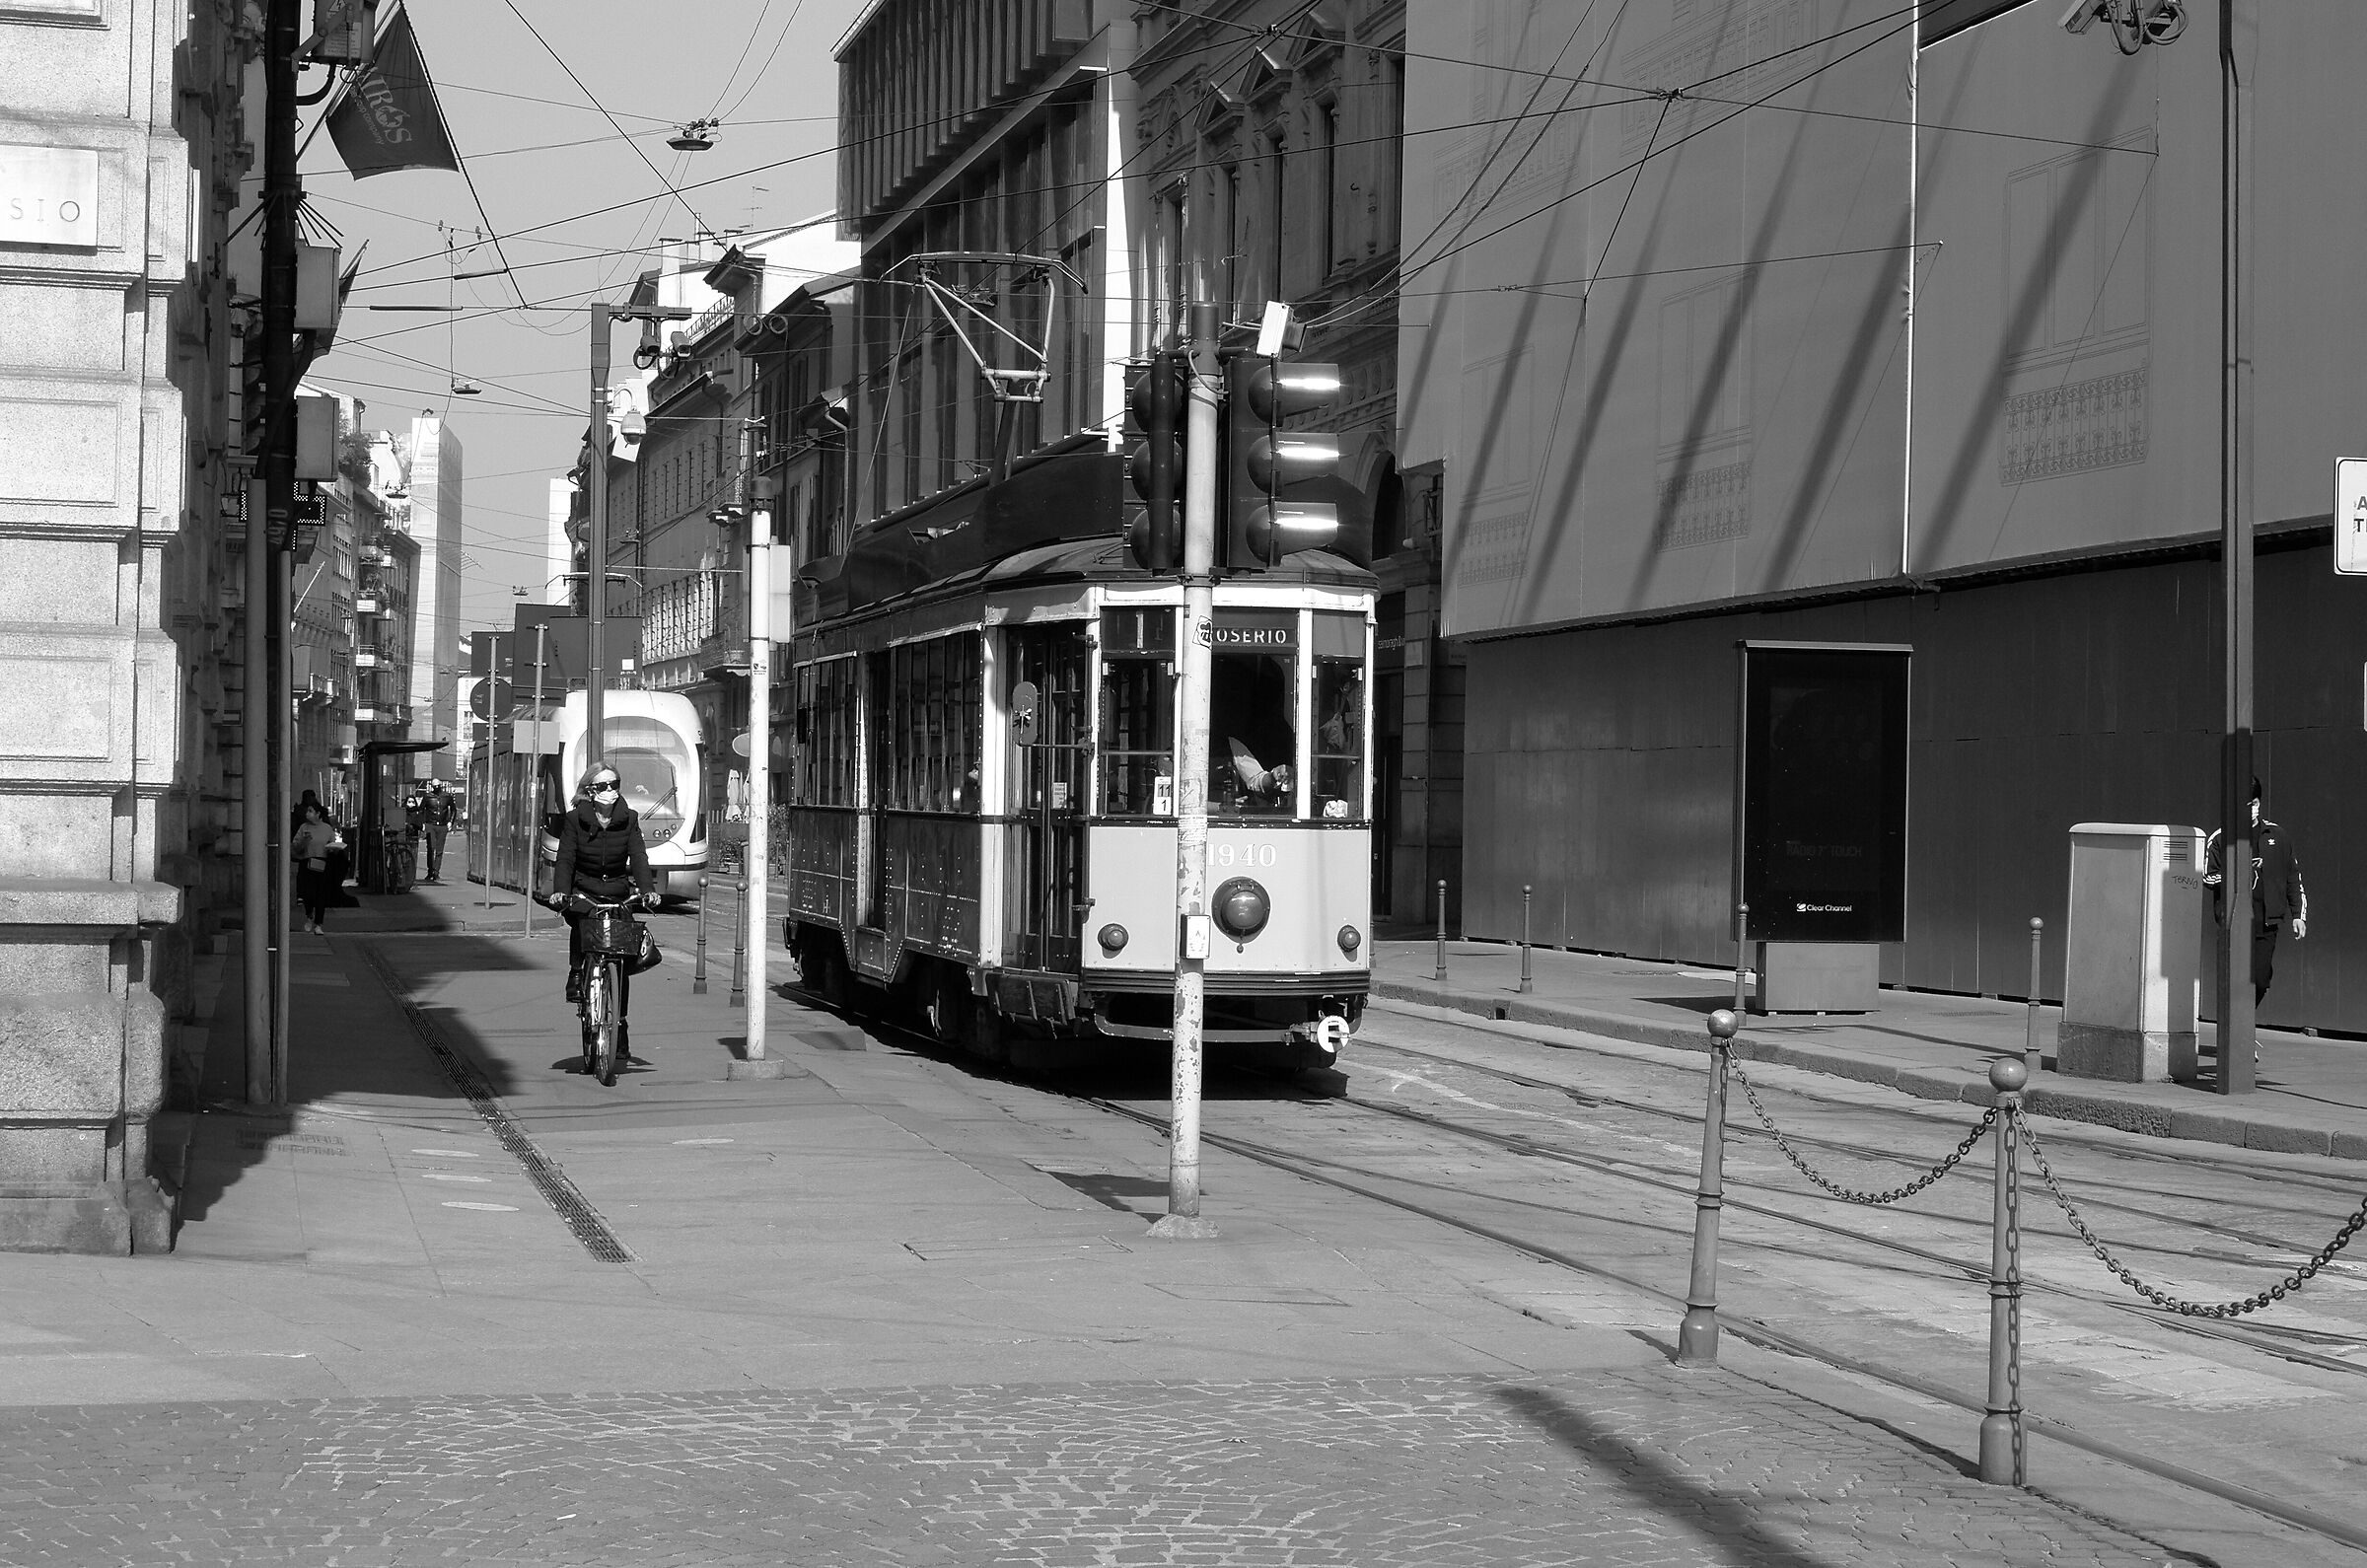 Bike or tram?...